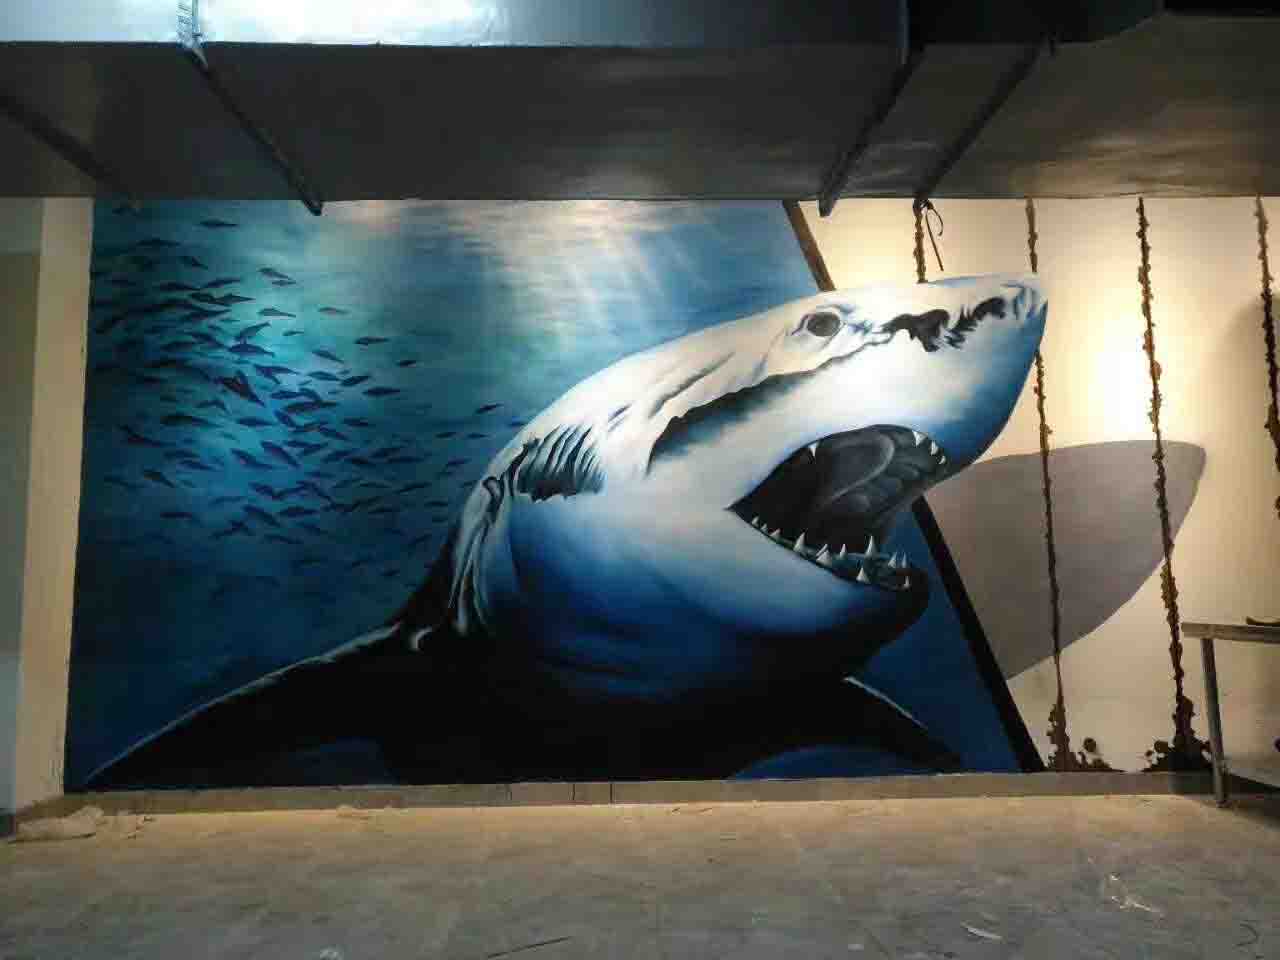 海洋馆儿童乐园工装室内鲨鱼3D画立体壁画墙绘彩绘涂鸦示意图